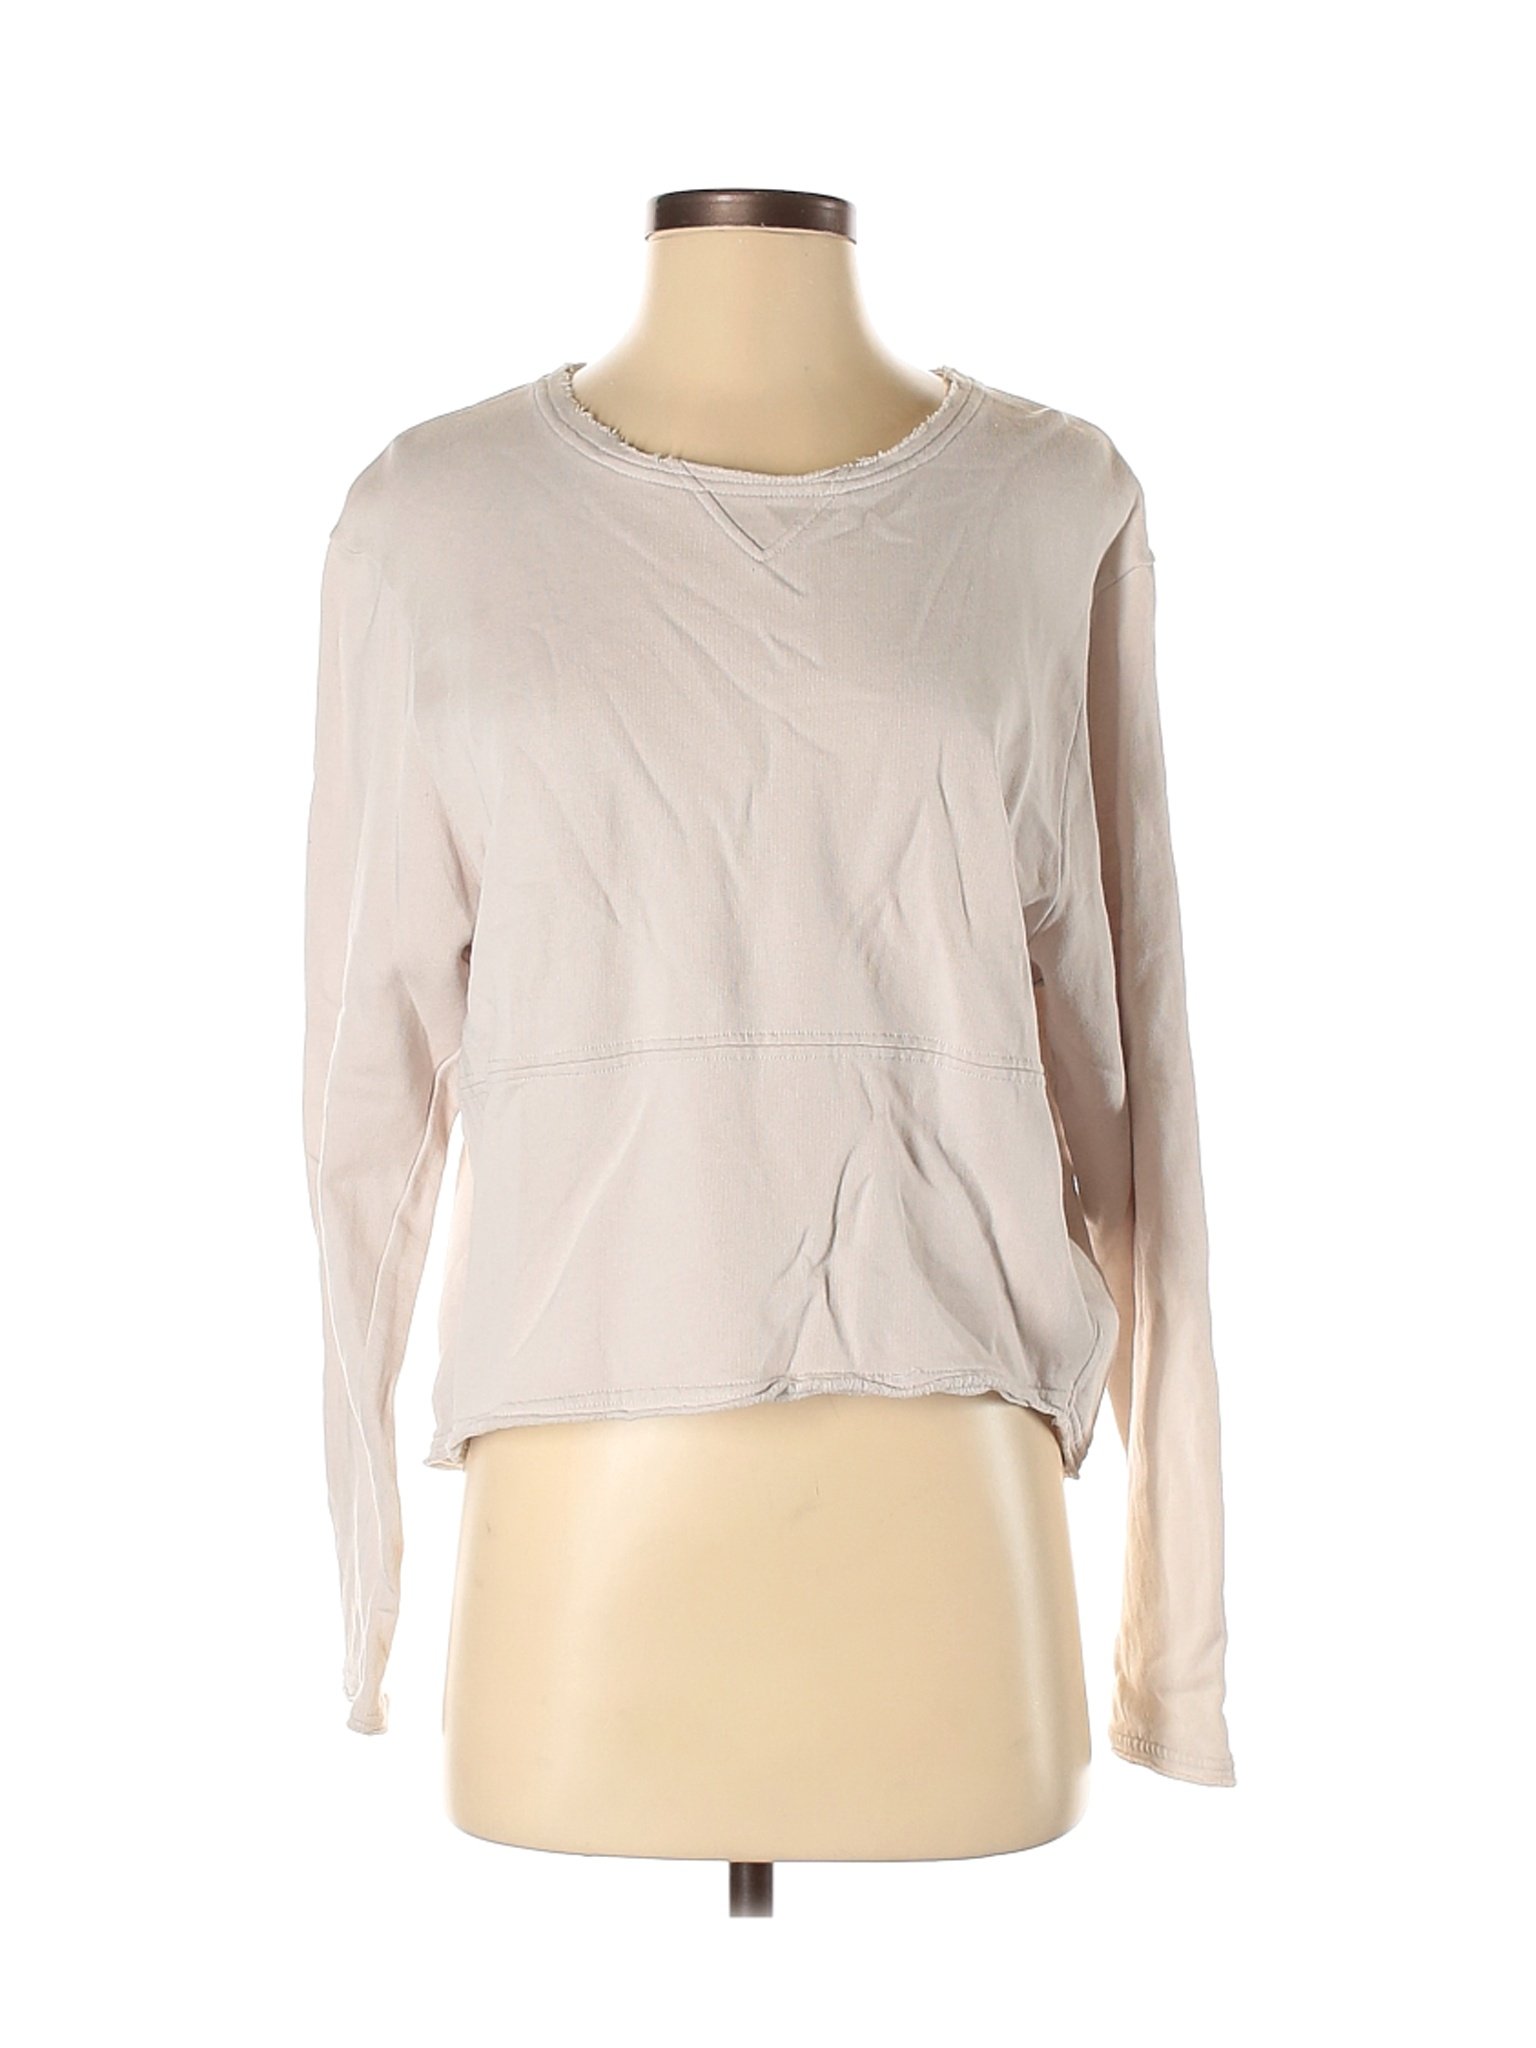 ALLSAINTS Women Ivory Long Sleeve Top S | eBay